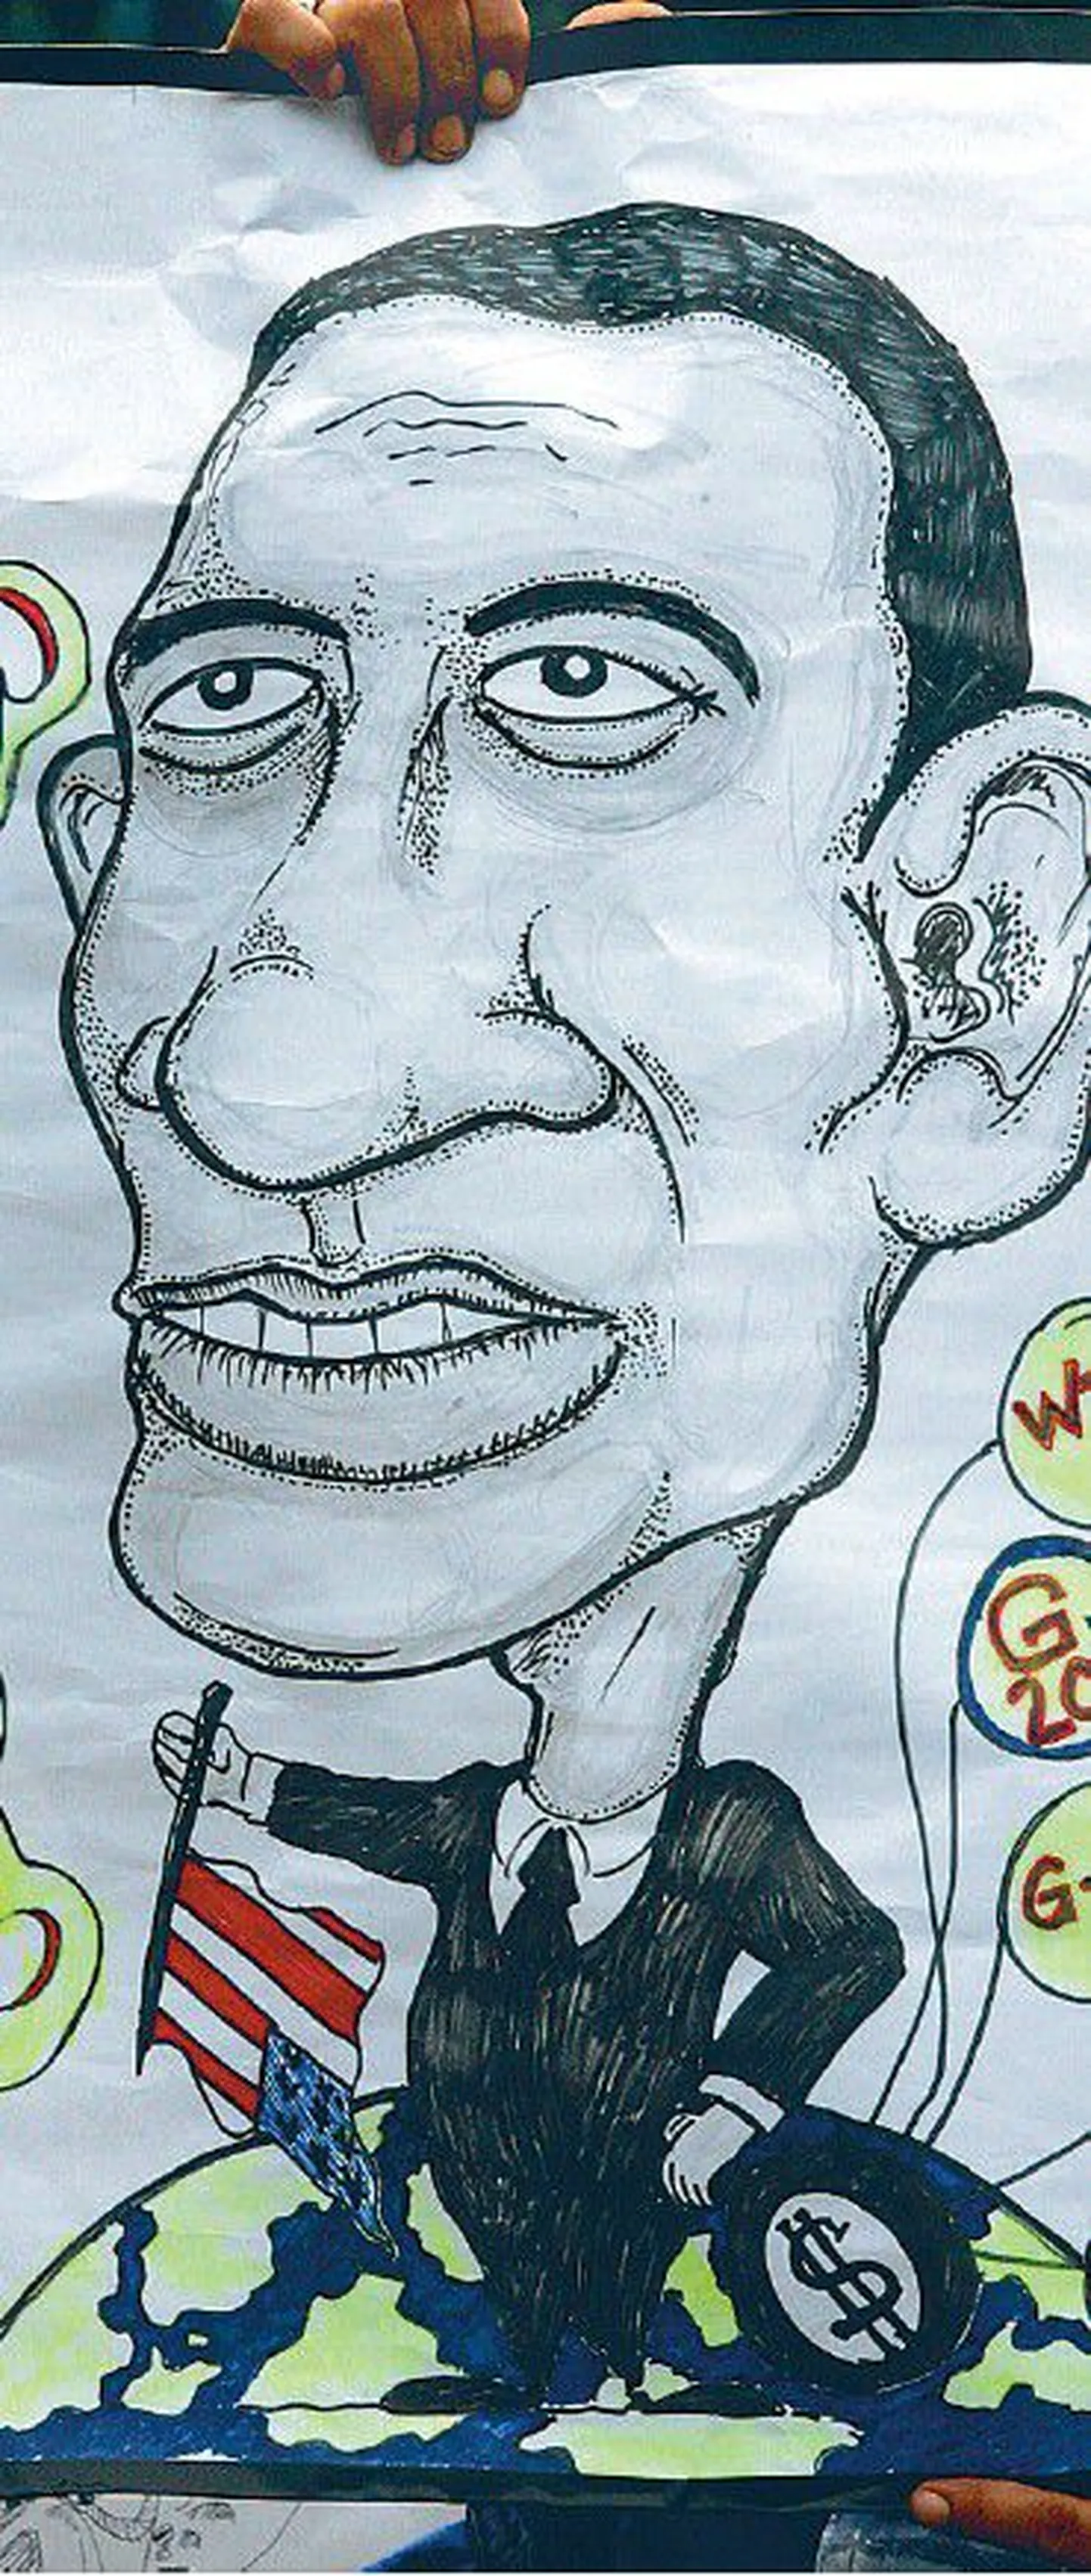 Barack Obamast oodatakse maailmas juba praegu palju. Meeleavaldaja hoidmas
Obamat kujutavat karikatuuri maailma juhtivate riikide G-20 kohtumisel Indoneesiasn Jakartas.